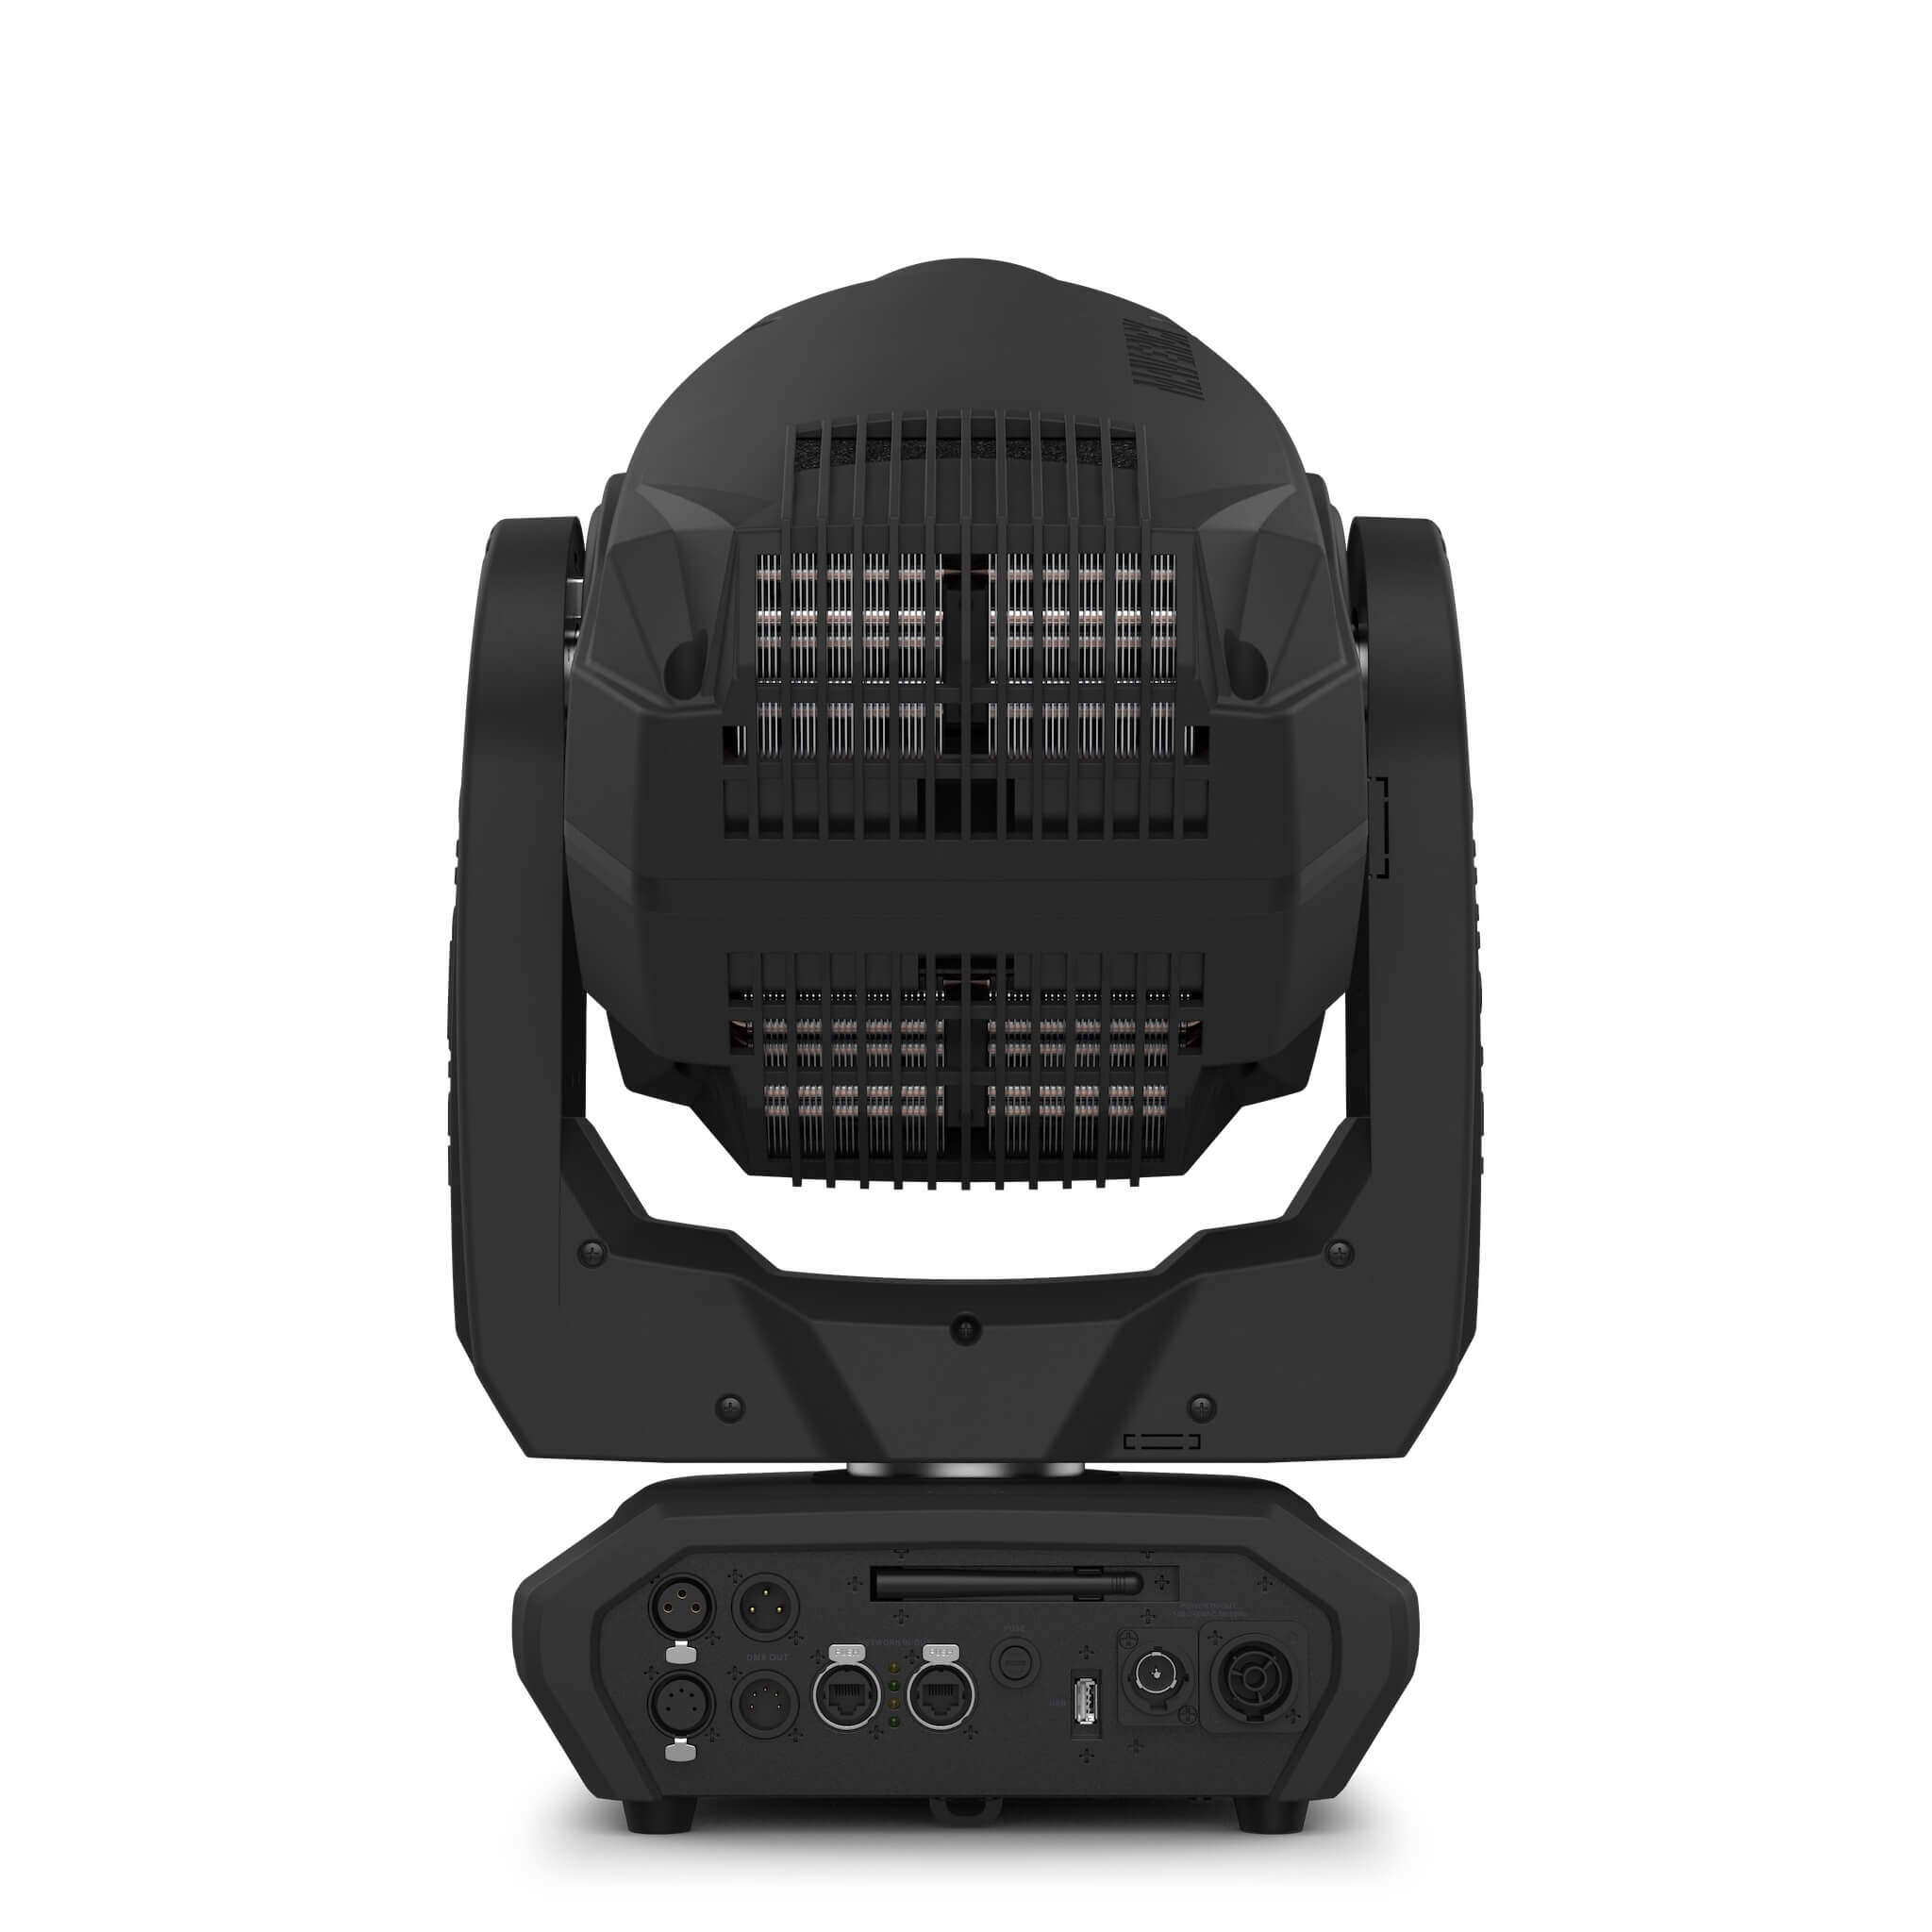 Chauvet Professional Maverick Force 1 Spot - LED Moving Head Light, back